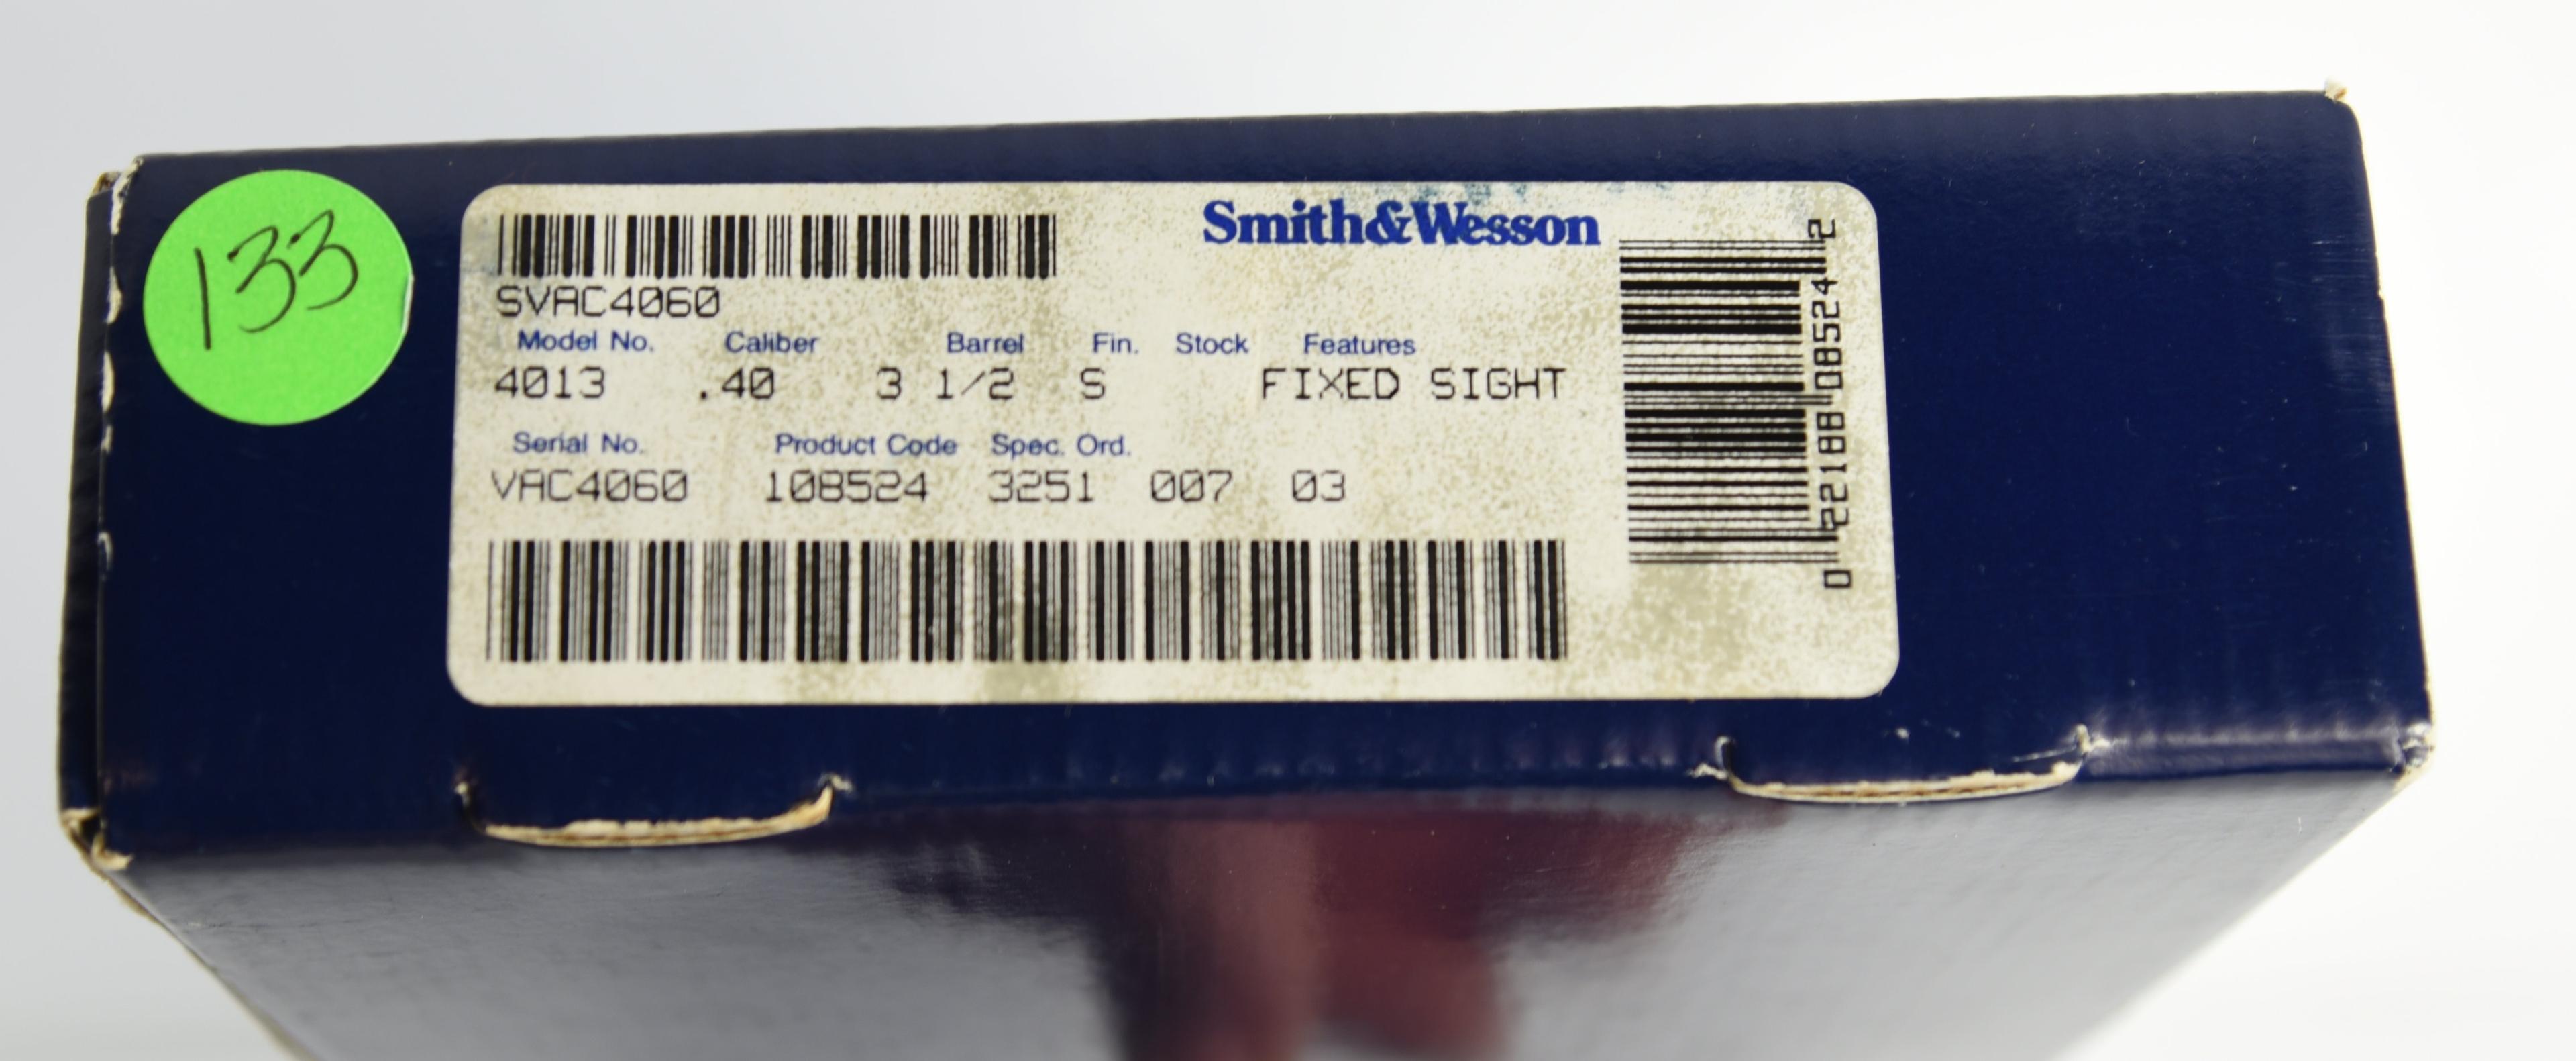 Lot #1888 - Smith & Wesson 4013 Semi Auto Pistol SN# SVAC4060 .40 S&W